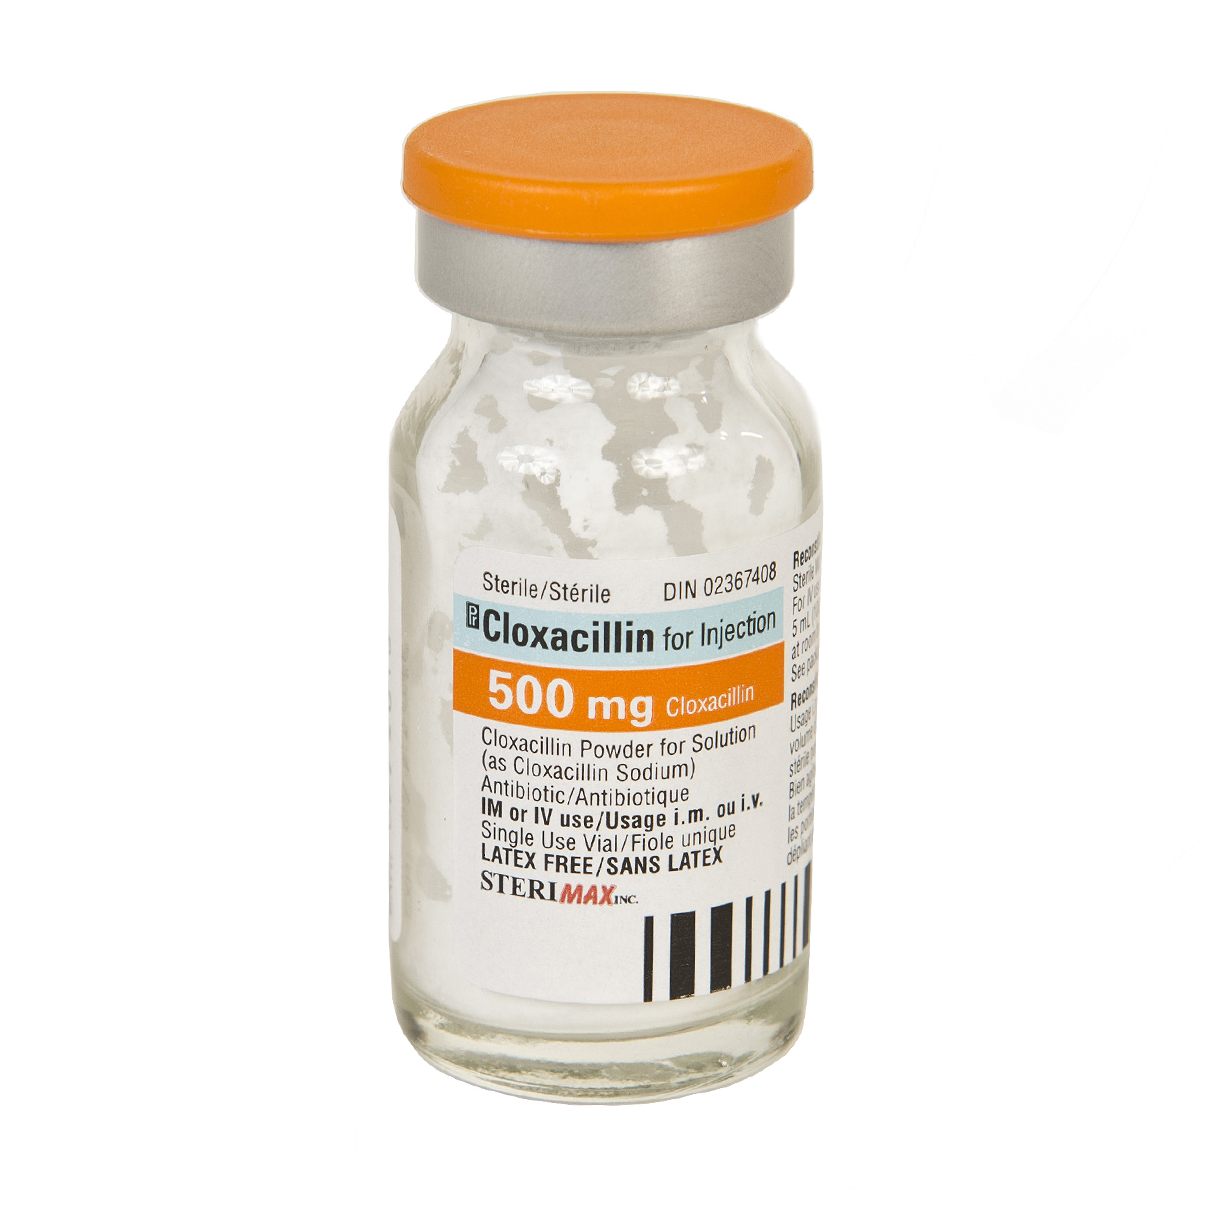 cloxacillin-for-injection-500mg